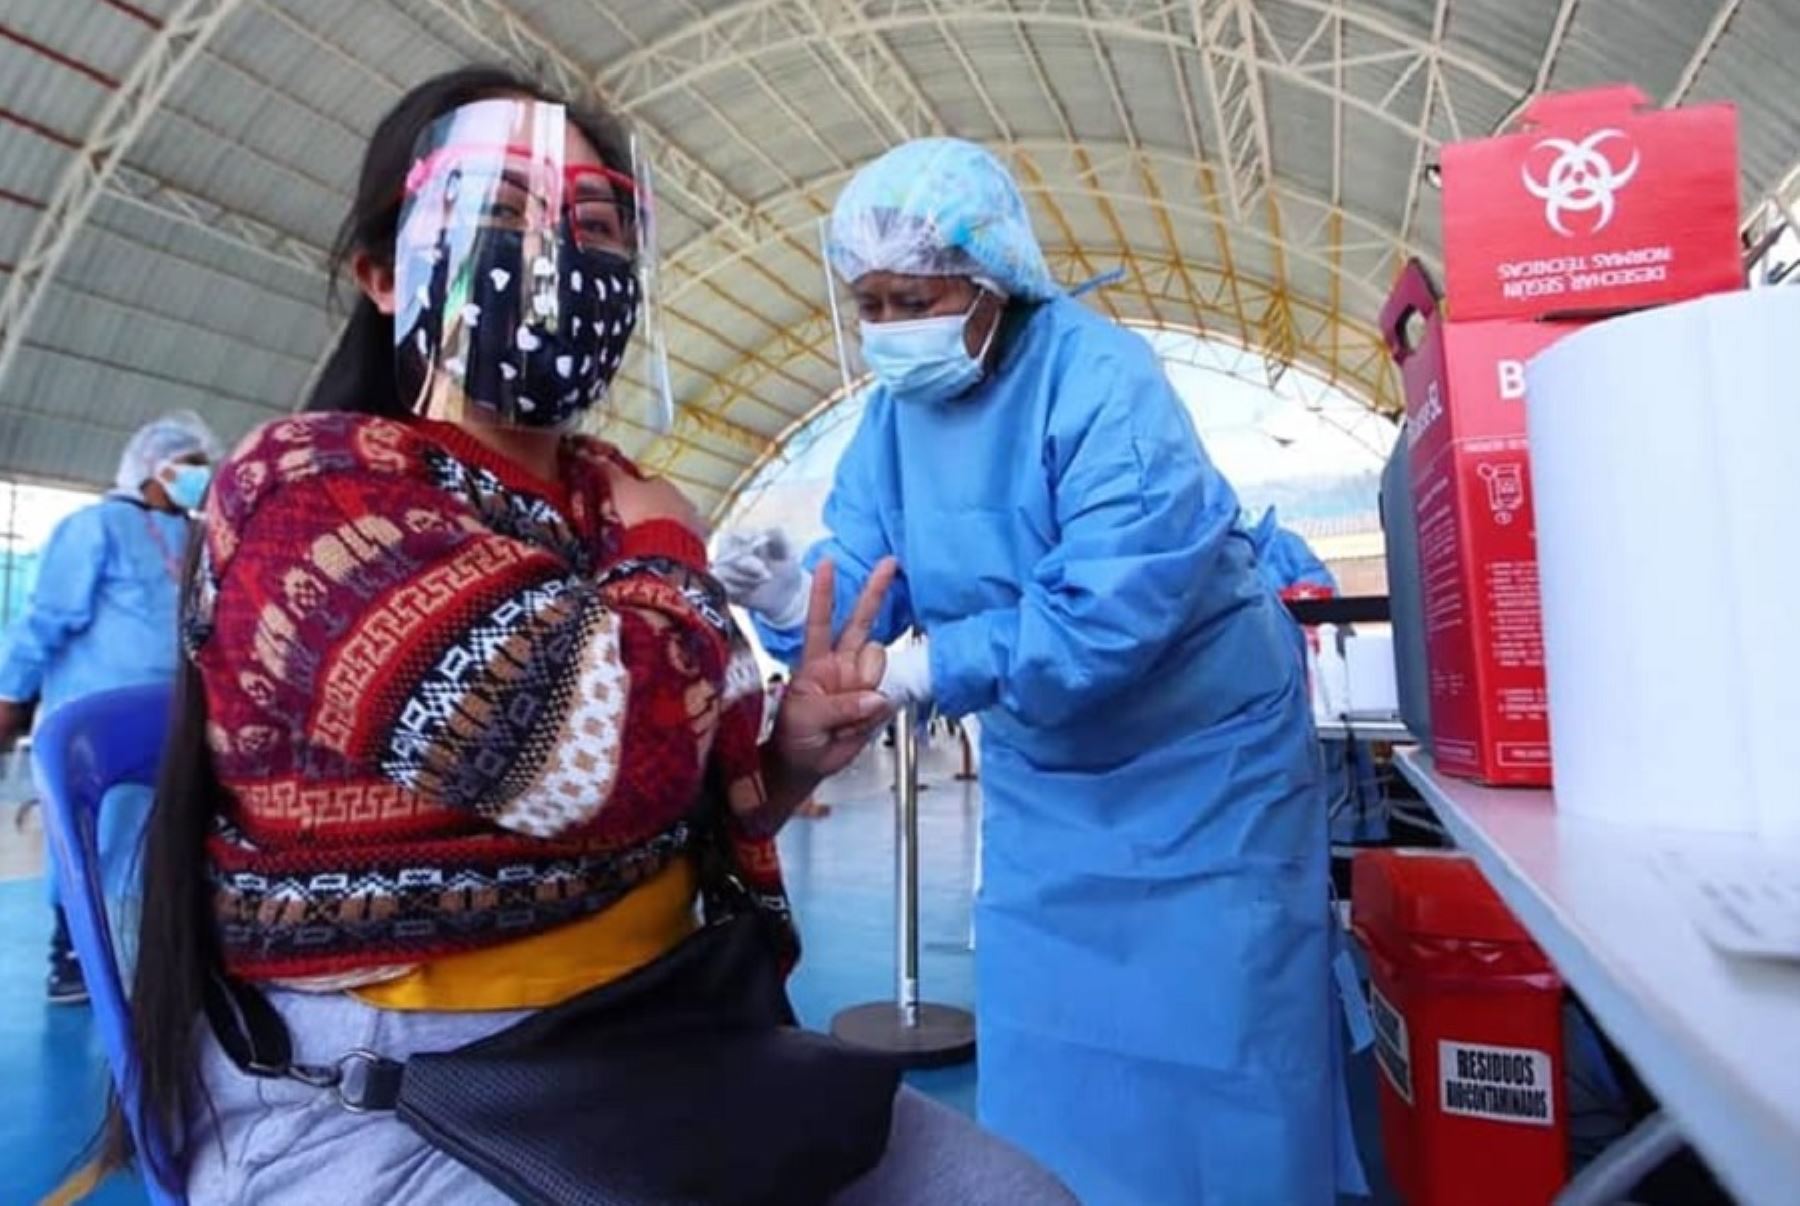 La Gerencia Regional de Salud de Cusco aplicará 52,000 dosis de la vacuna contra el Covid-19 en una gran jornada denominada Vacuna Wasi o vacunación casa por casa, a realizarse el domingo 23 de enero, cuyo objetivo es cerrar brechas en las 13 provincias de la región.